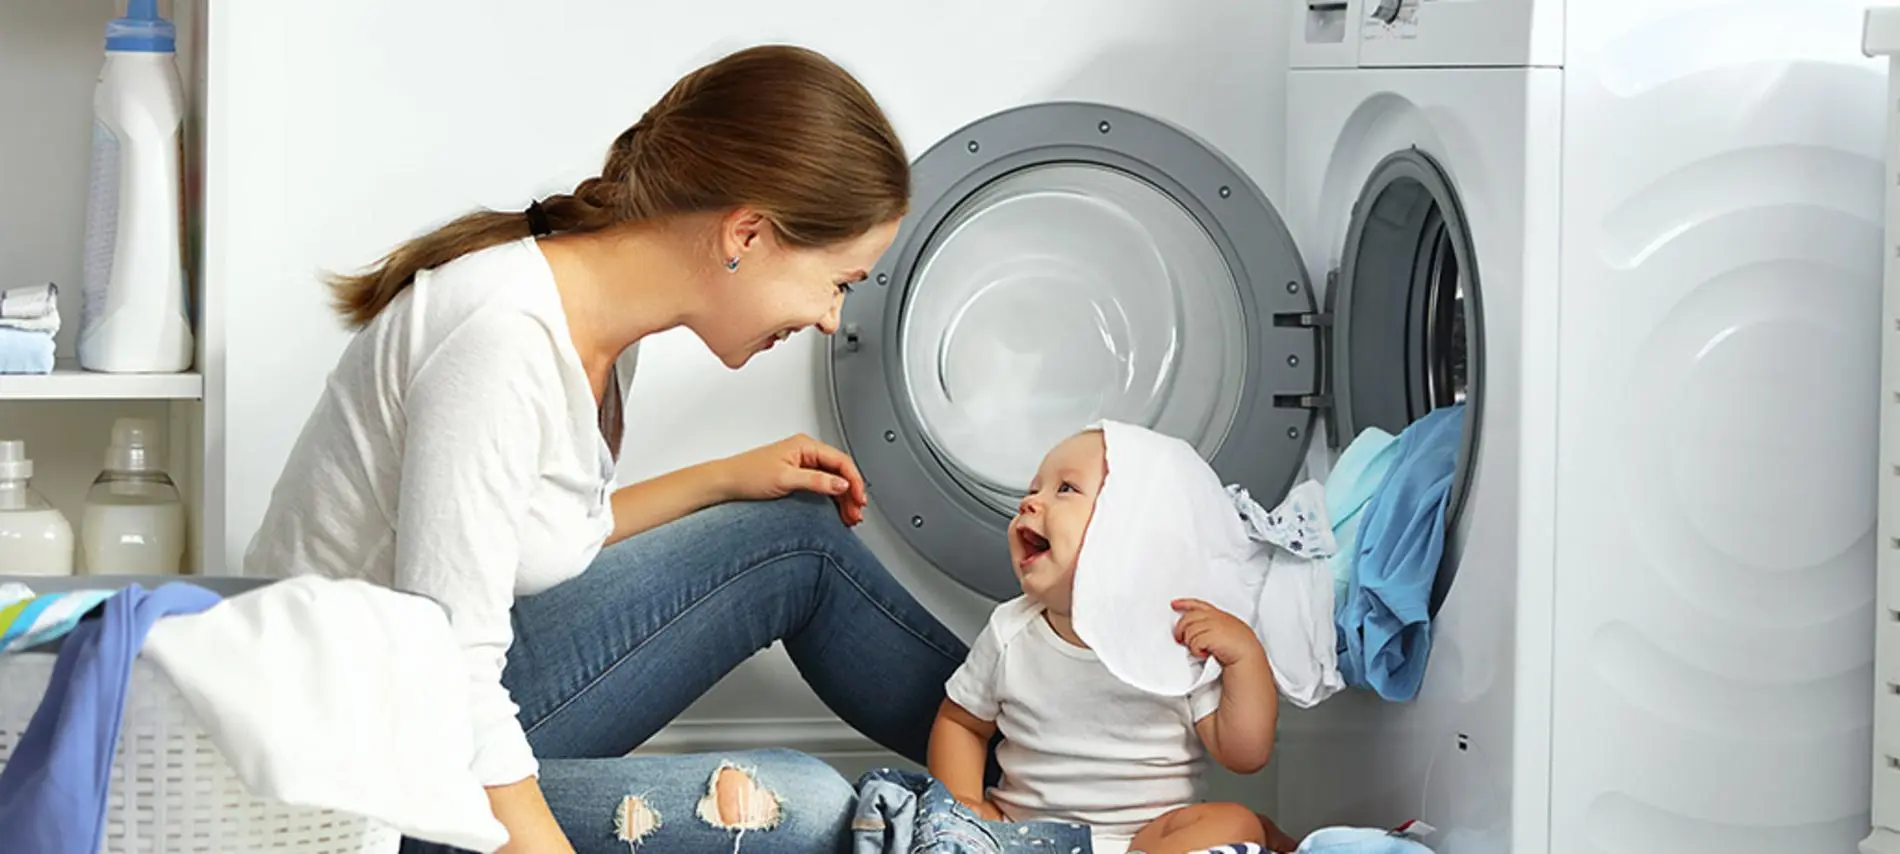 en que semana empieza a lavar la ropa del bebe - Qué pasa si no lavo la ropa del recién nacido